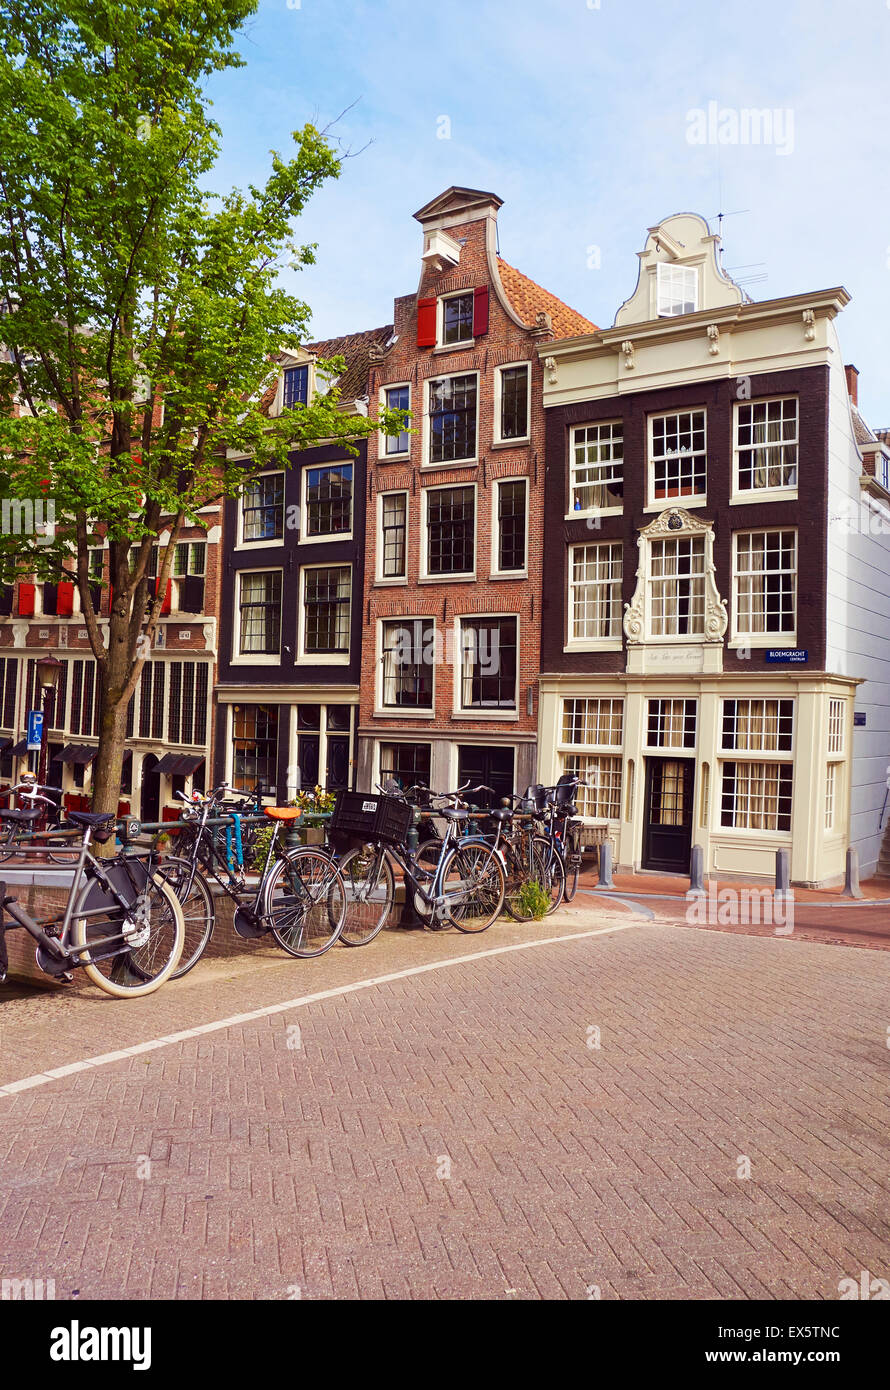 Typische Canalside beherbergt und Fahrräder in der neun Straßen von Amsterdam, Niederlande, EU. Stockfoto